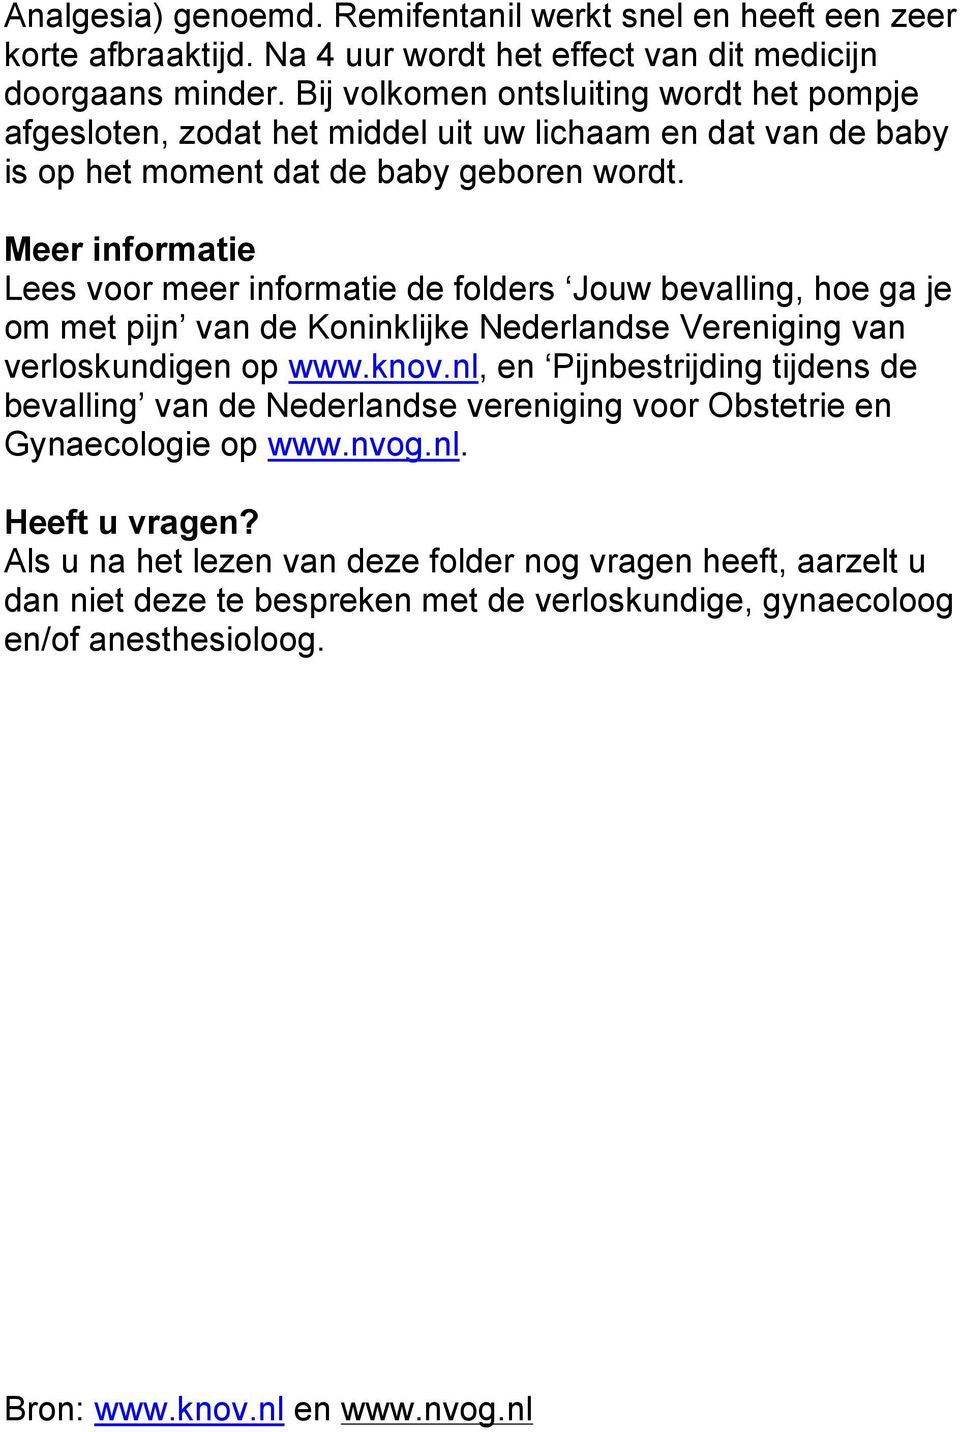 Meer informatie Lees voor meer informatie de folders Jouw bevalling, hoe ga je om met pijn van de Koninklijke Nederlandse Vereniging van verloskundigen op www.knov.